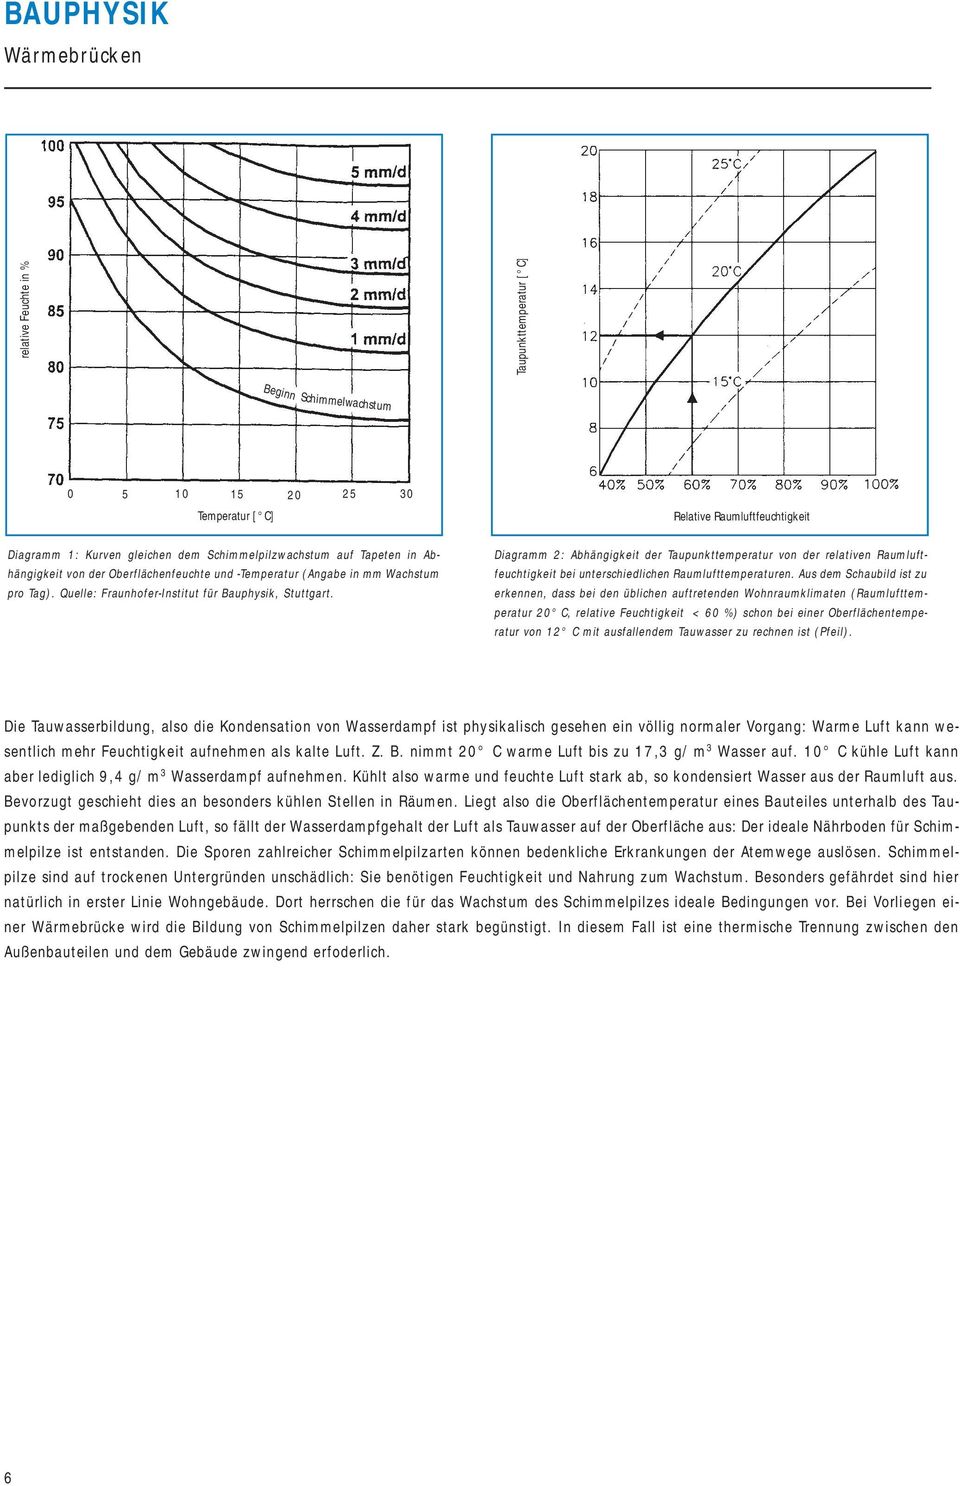 Relative Raumluftfeuchtigkeit Diagramm 2: Abhängigkeit der Taupunkttemperatur von der relativen Raumluftfeuchtigkeit bei unterschiedlichen Raumlufttemperaturen.